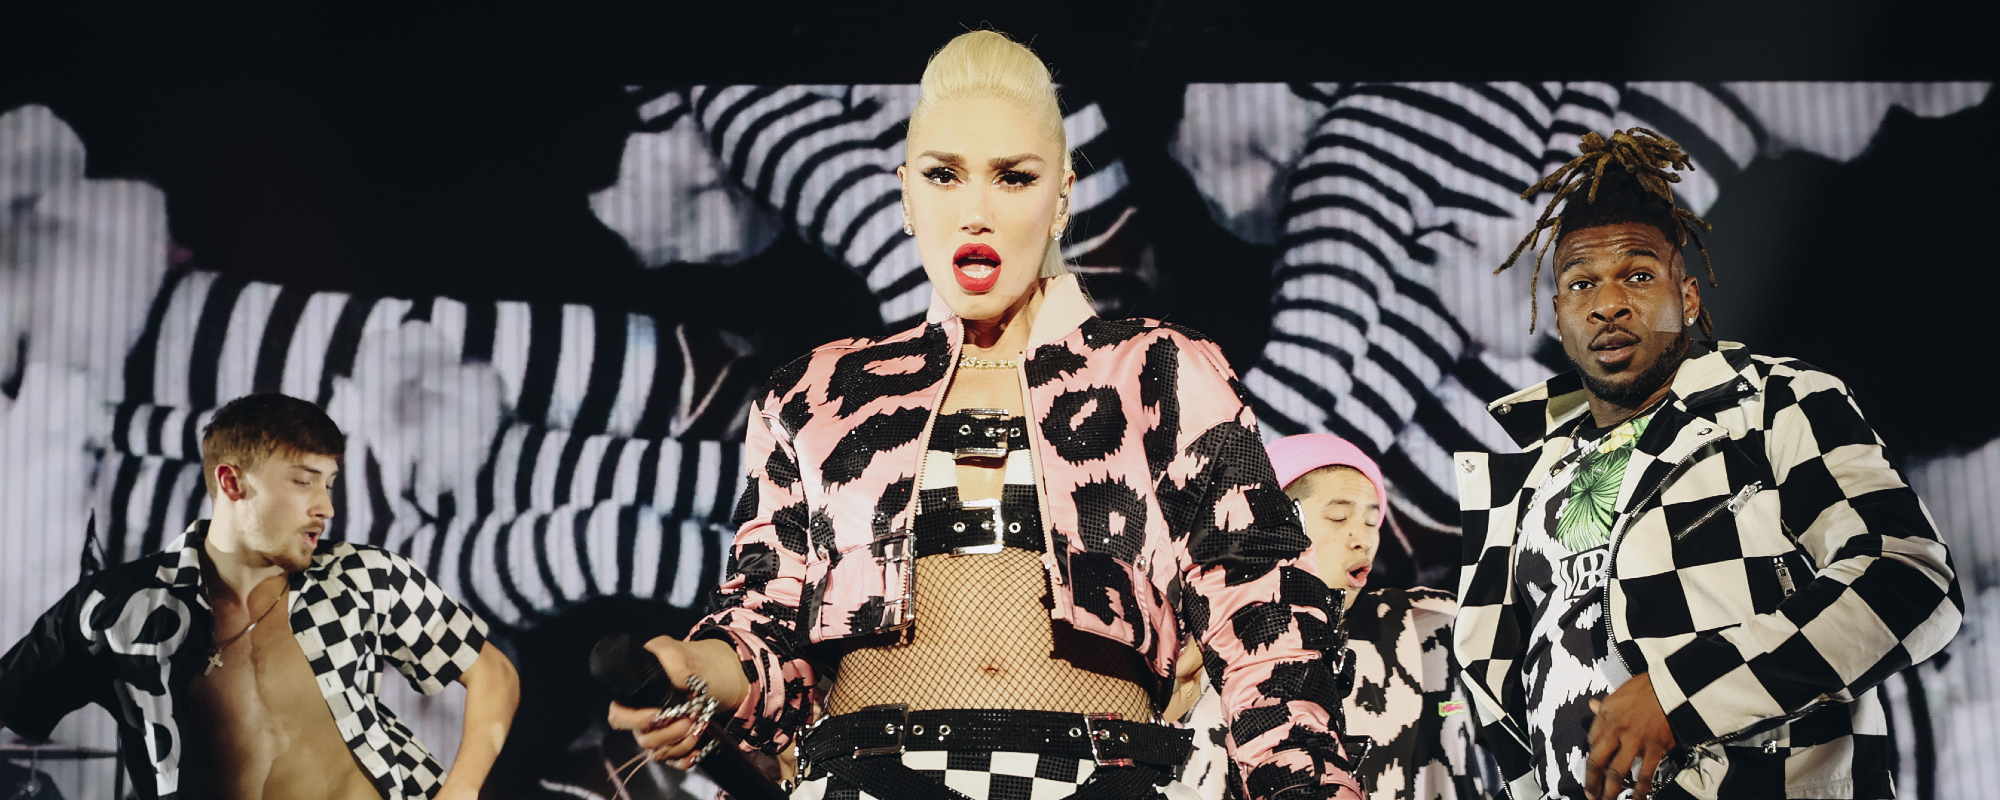 Gwen Stefani Reveals How No Doubt Reunion Came About, Talks Fans Inspiration, & Coachella Performance